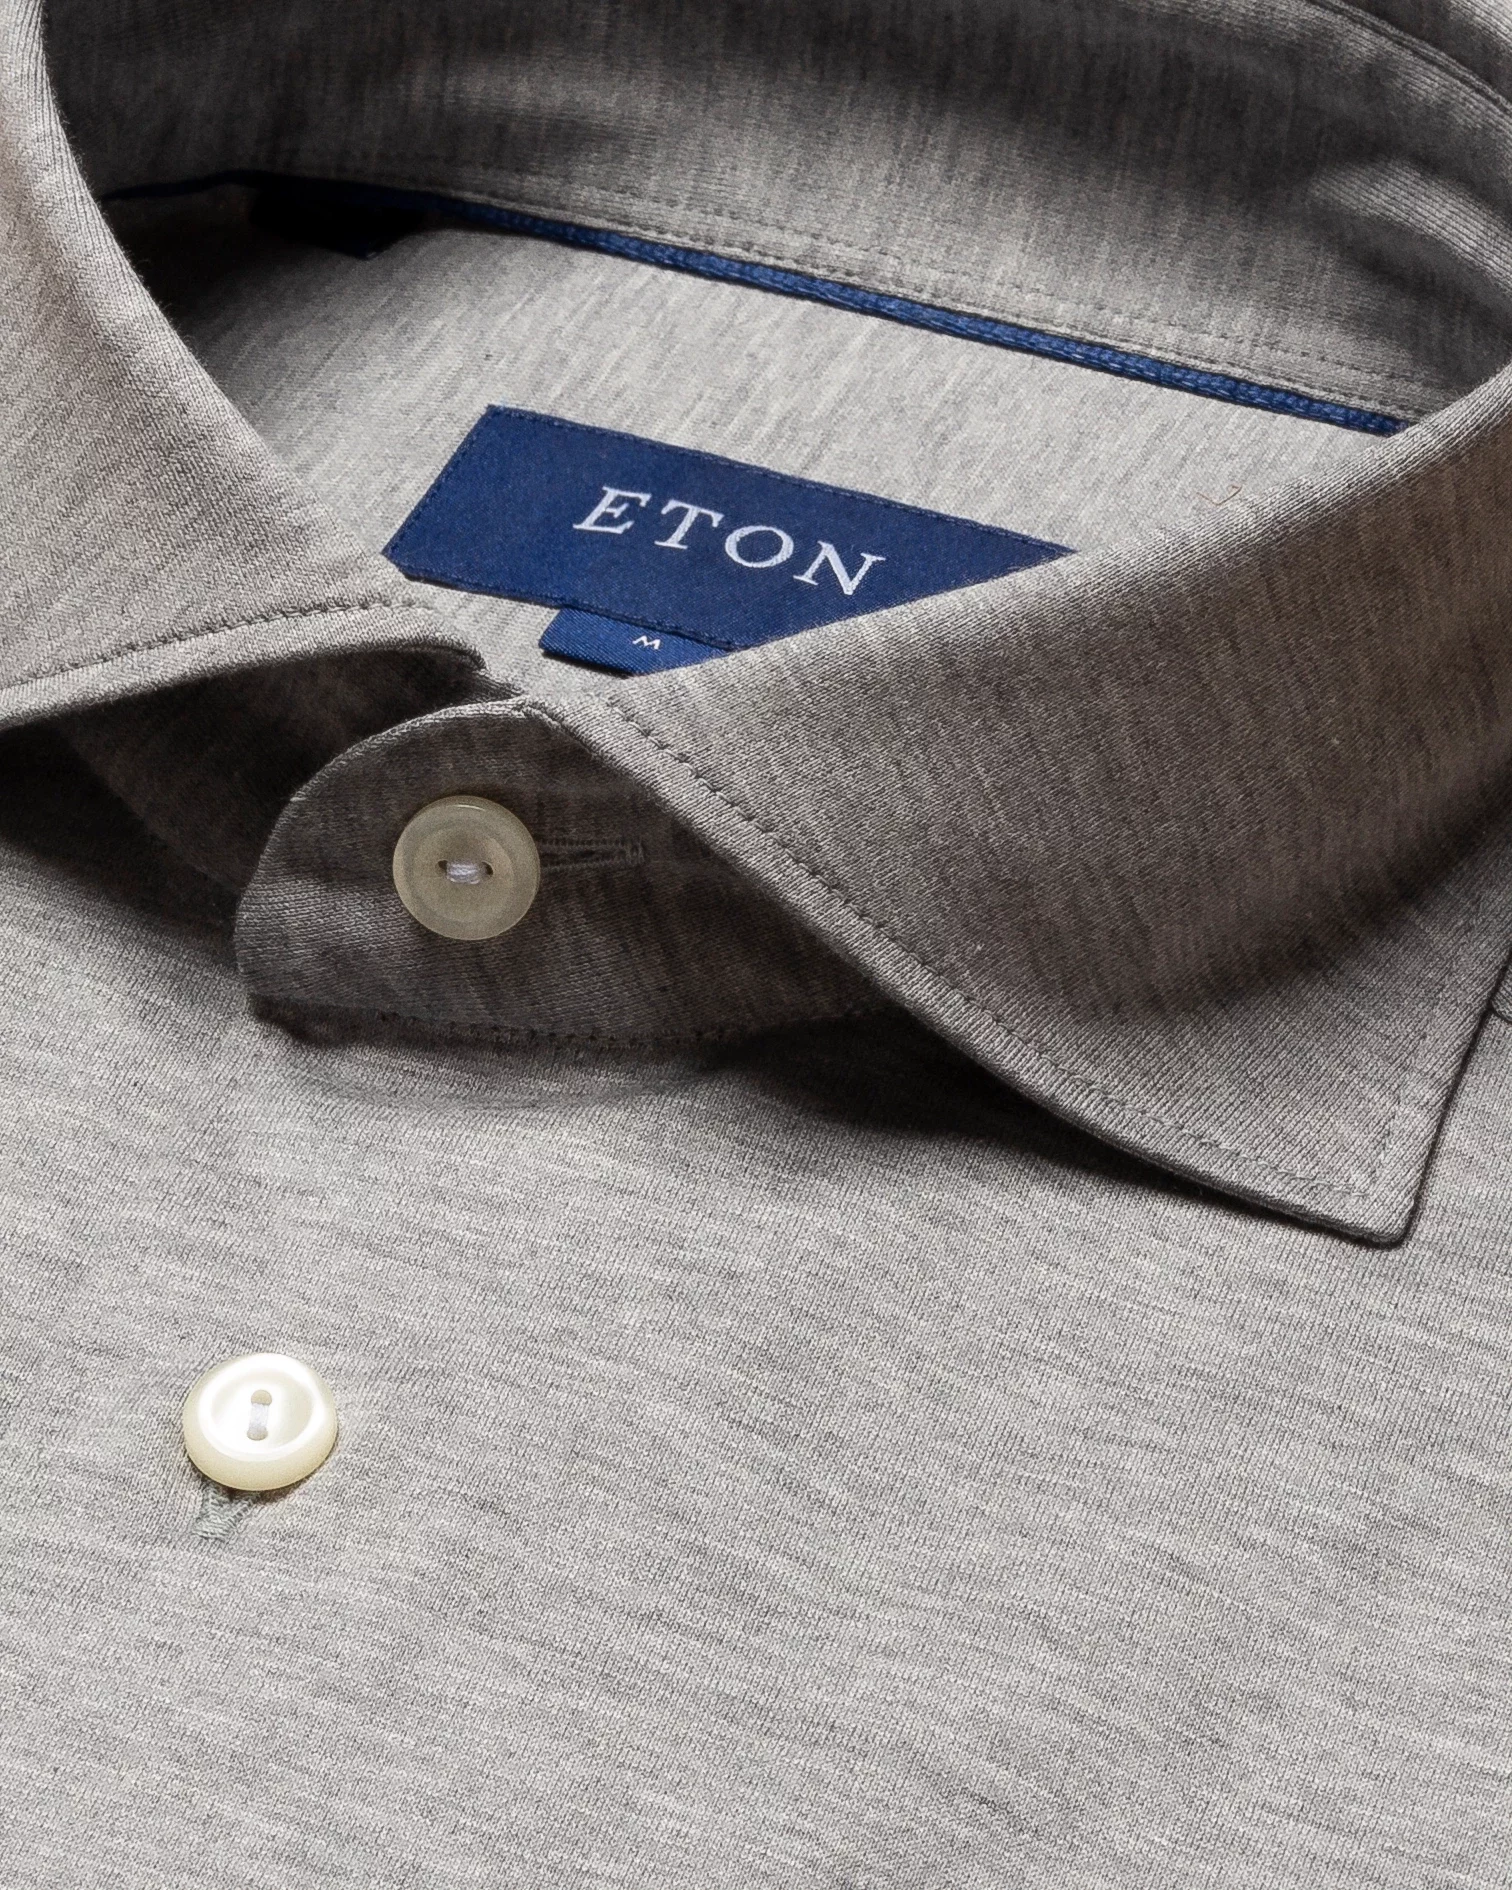 Eton - grey jersey